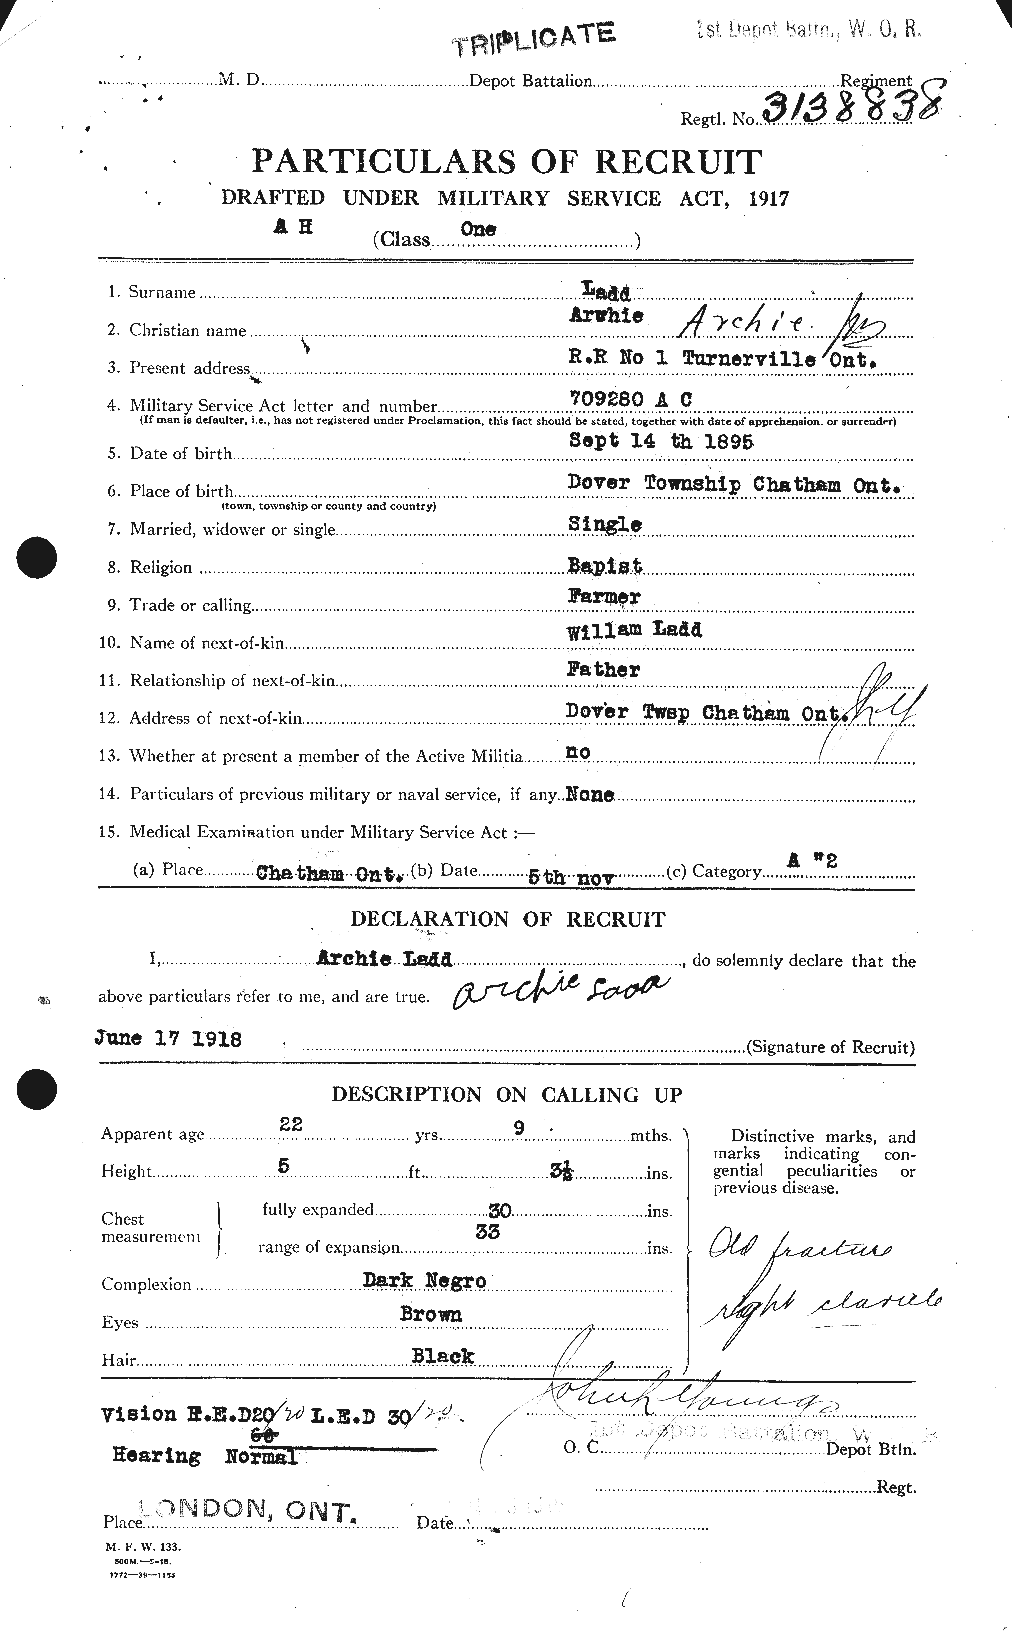 Dossiers du Personnel de la Première Guerre mondiale - CEC 444653a